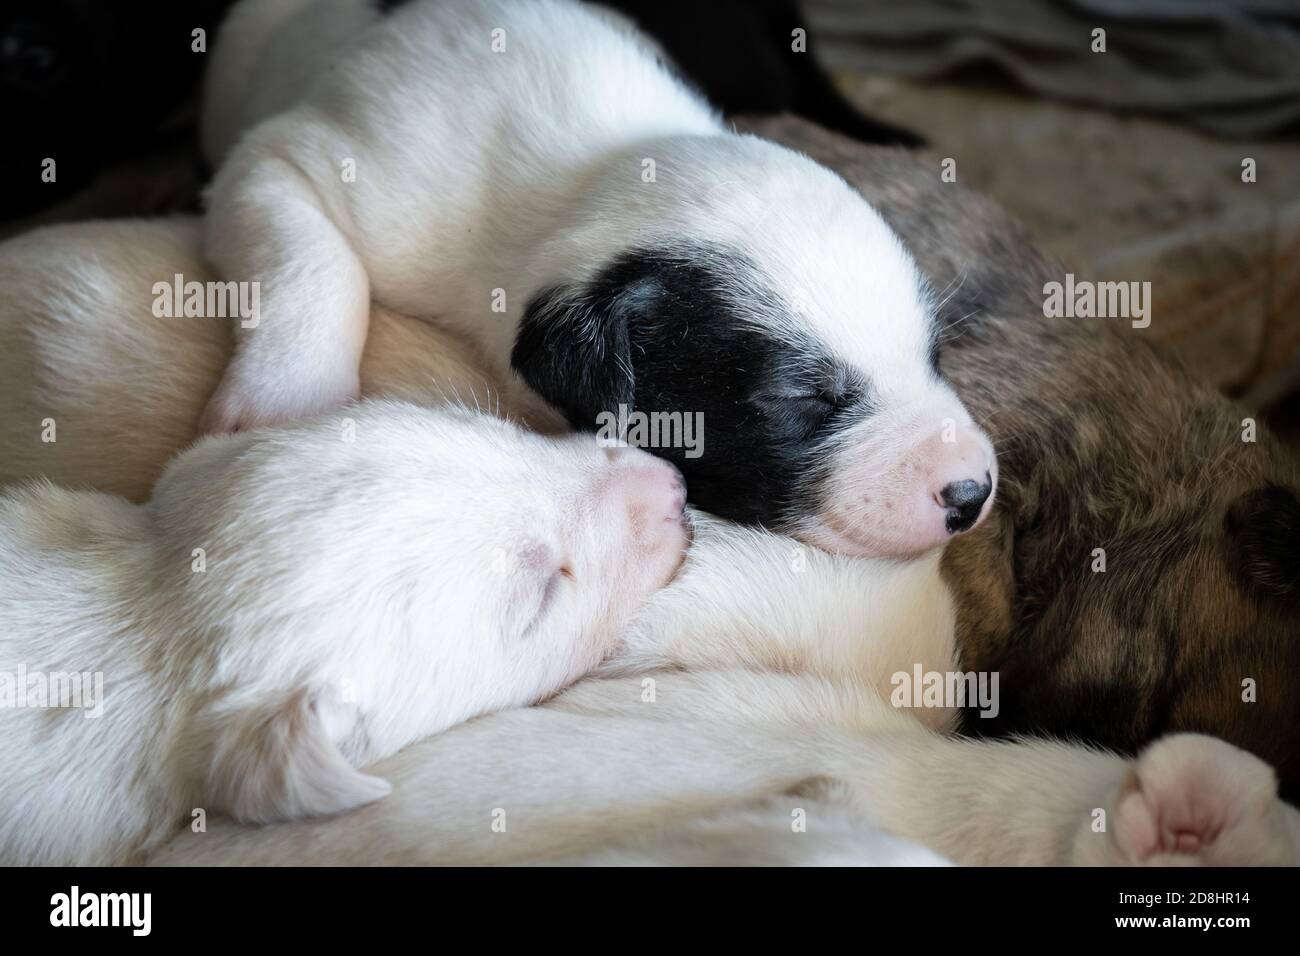 Carino cucciolo maschio di cane neonato che dorme con i suoi fratelli Foto Stock